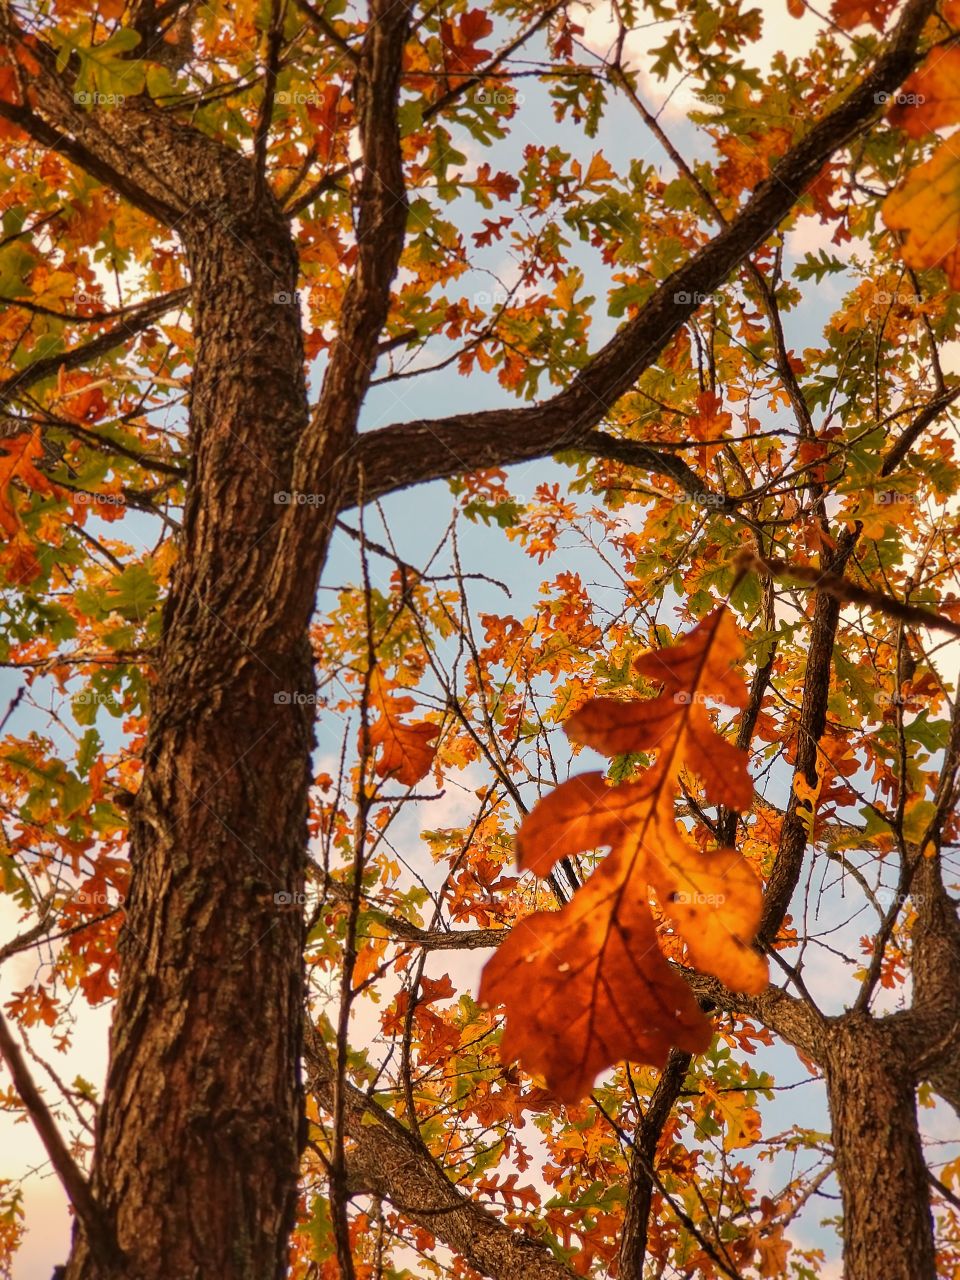 Burr Oak Tree in Fall